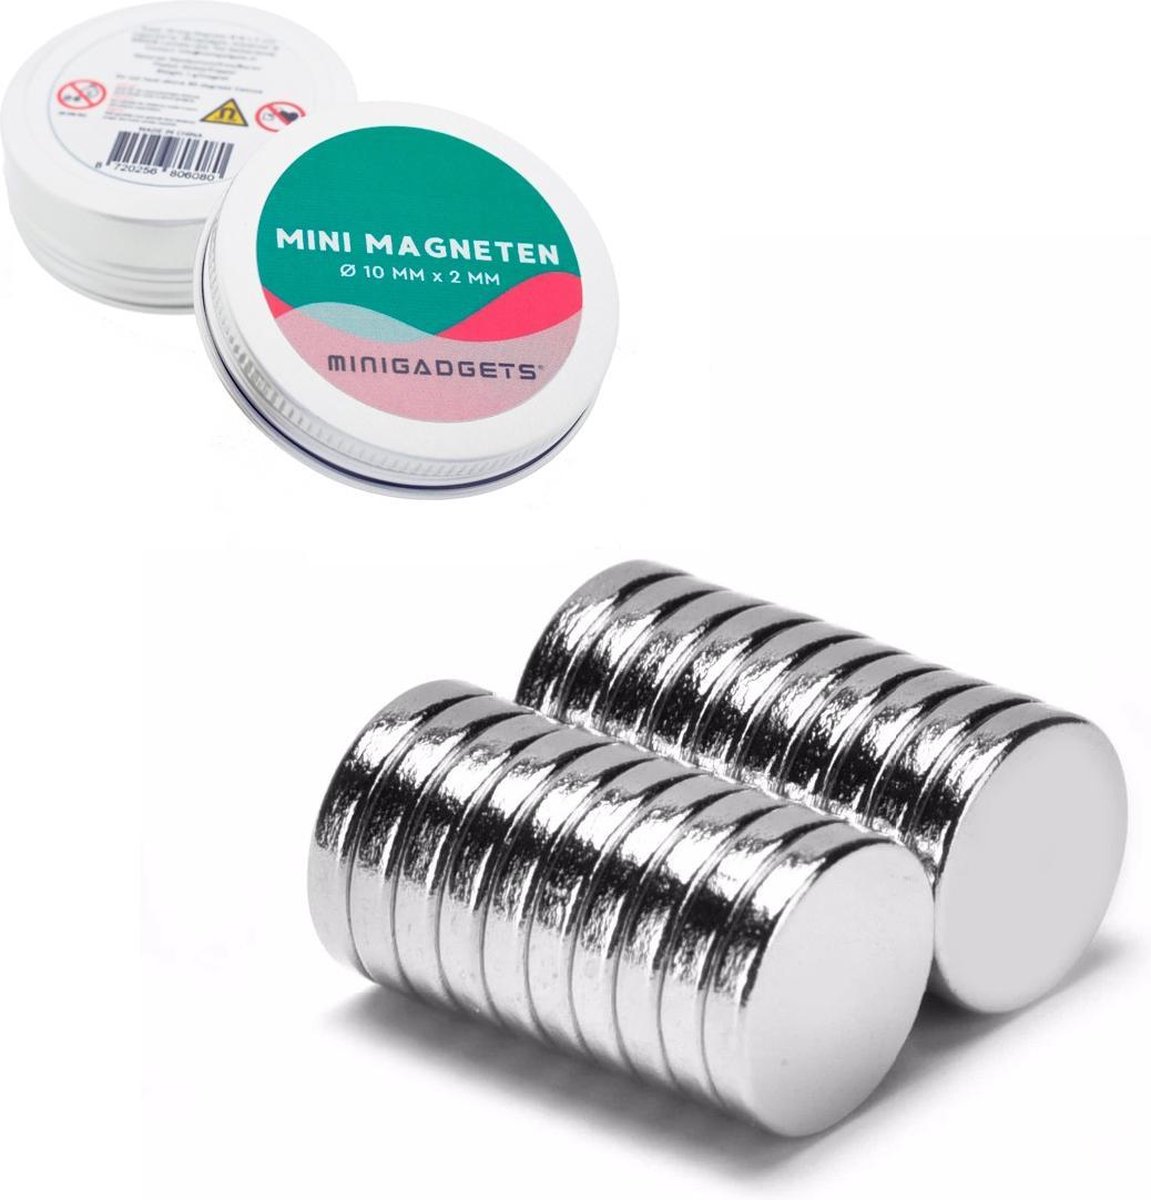 Super sterke magneten - 10 x 2 mm (10-stuks) - Rond - Neodymium - Koelkast magneten - Whiteboard magneten - Corsage – Klein - Ronde - 10x2mm - Minigadgets